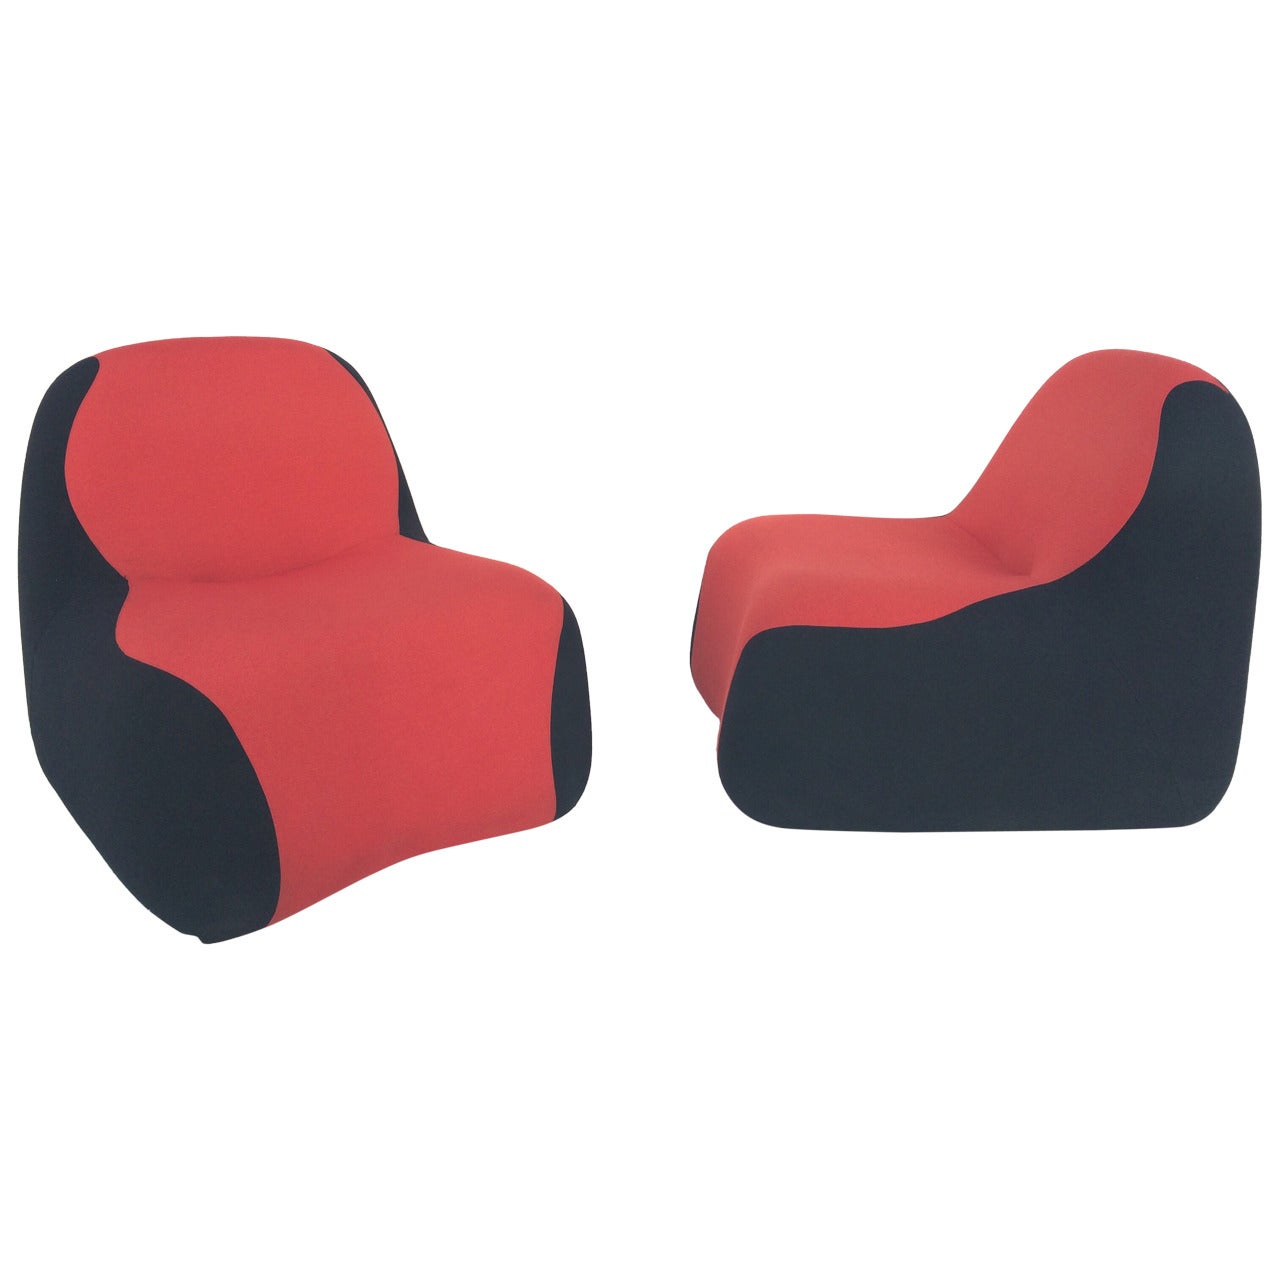 Paire de chaises "Blob" conçues par Karim Rashid